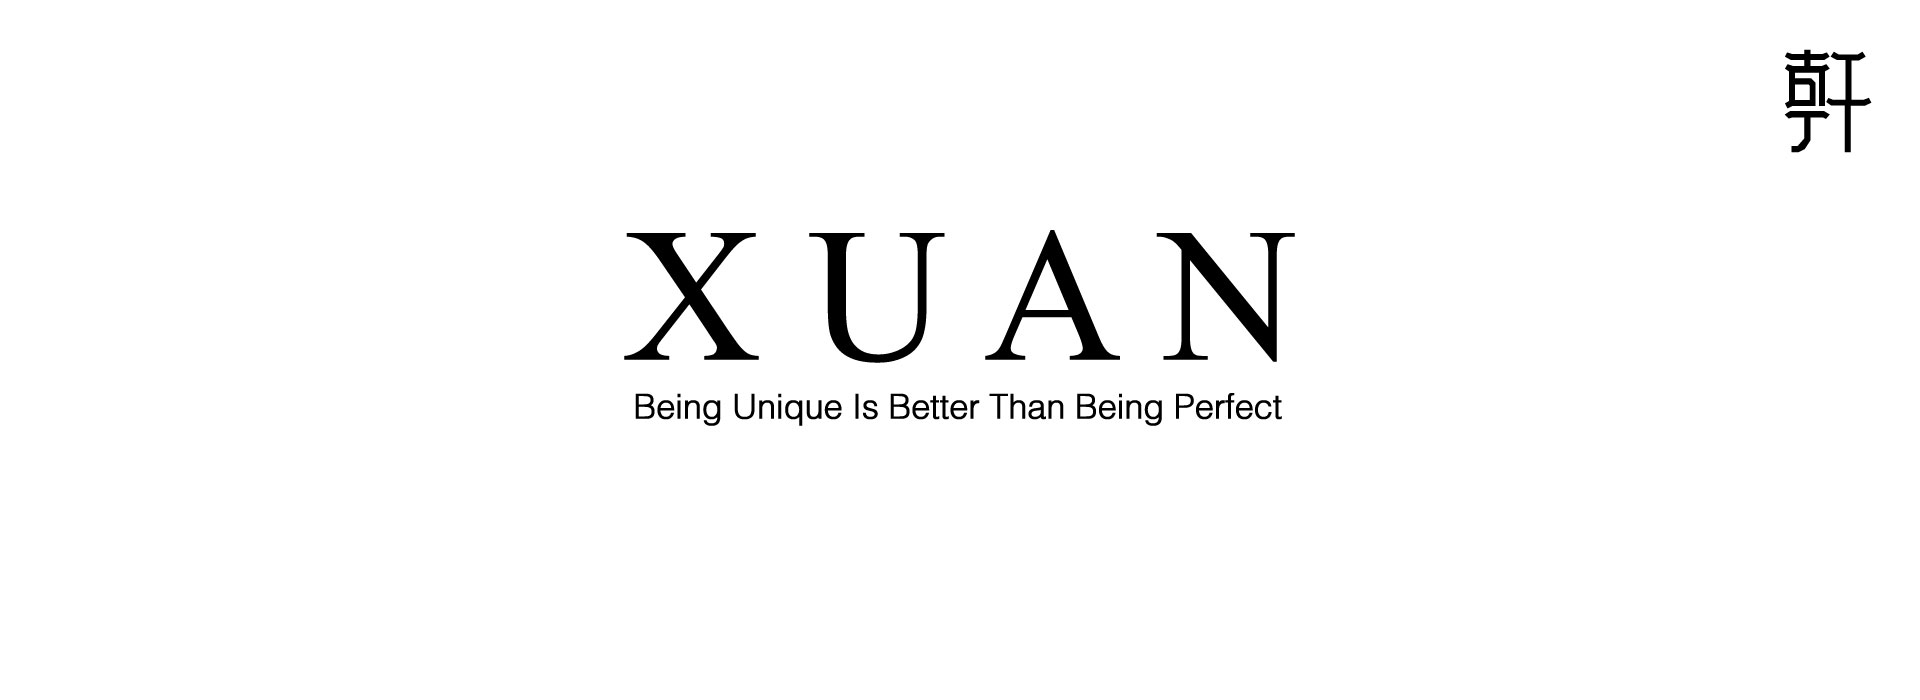 Xuan Banner